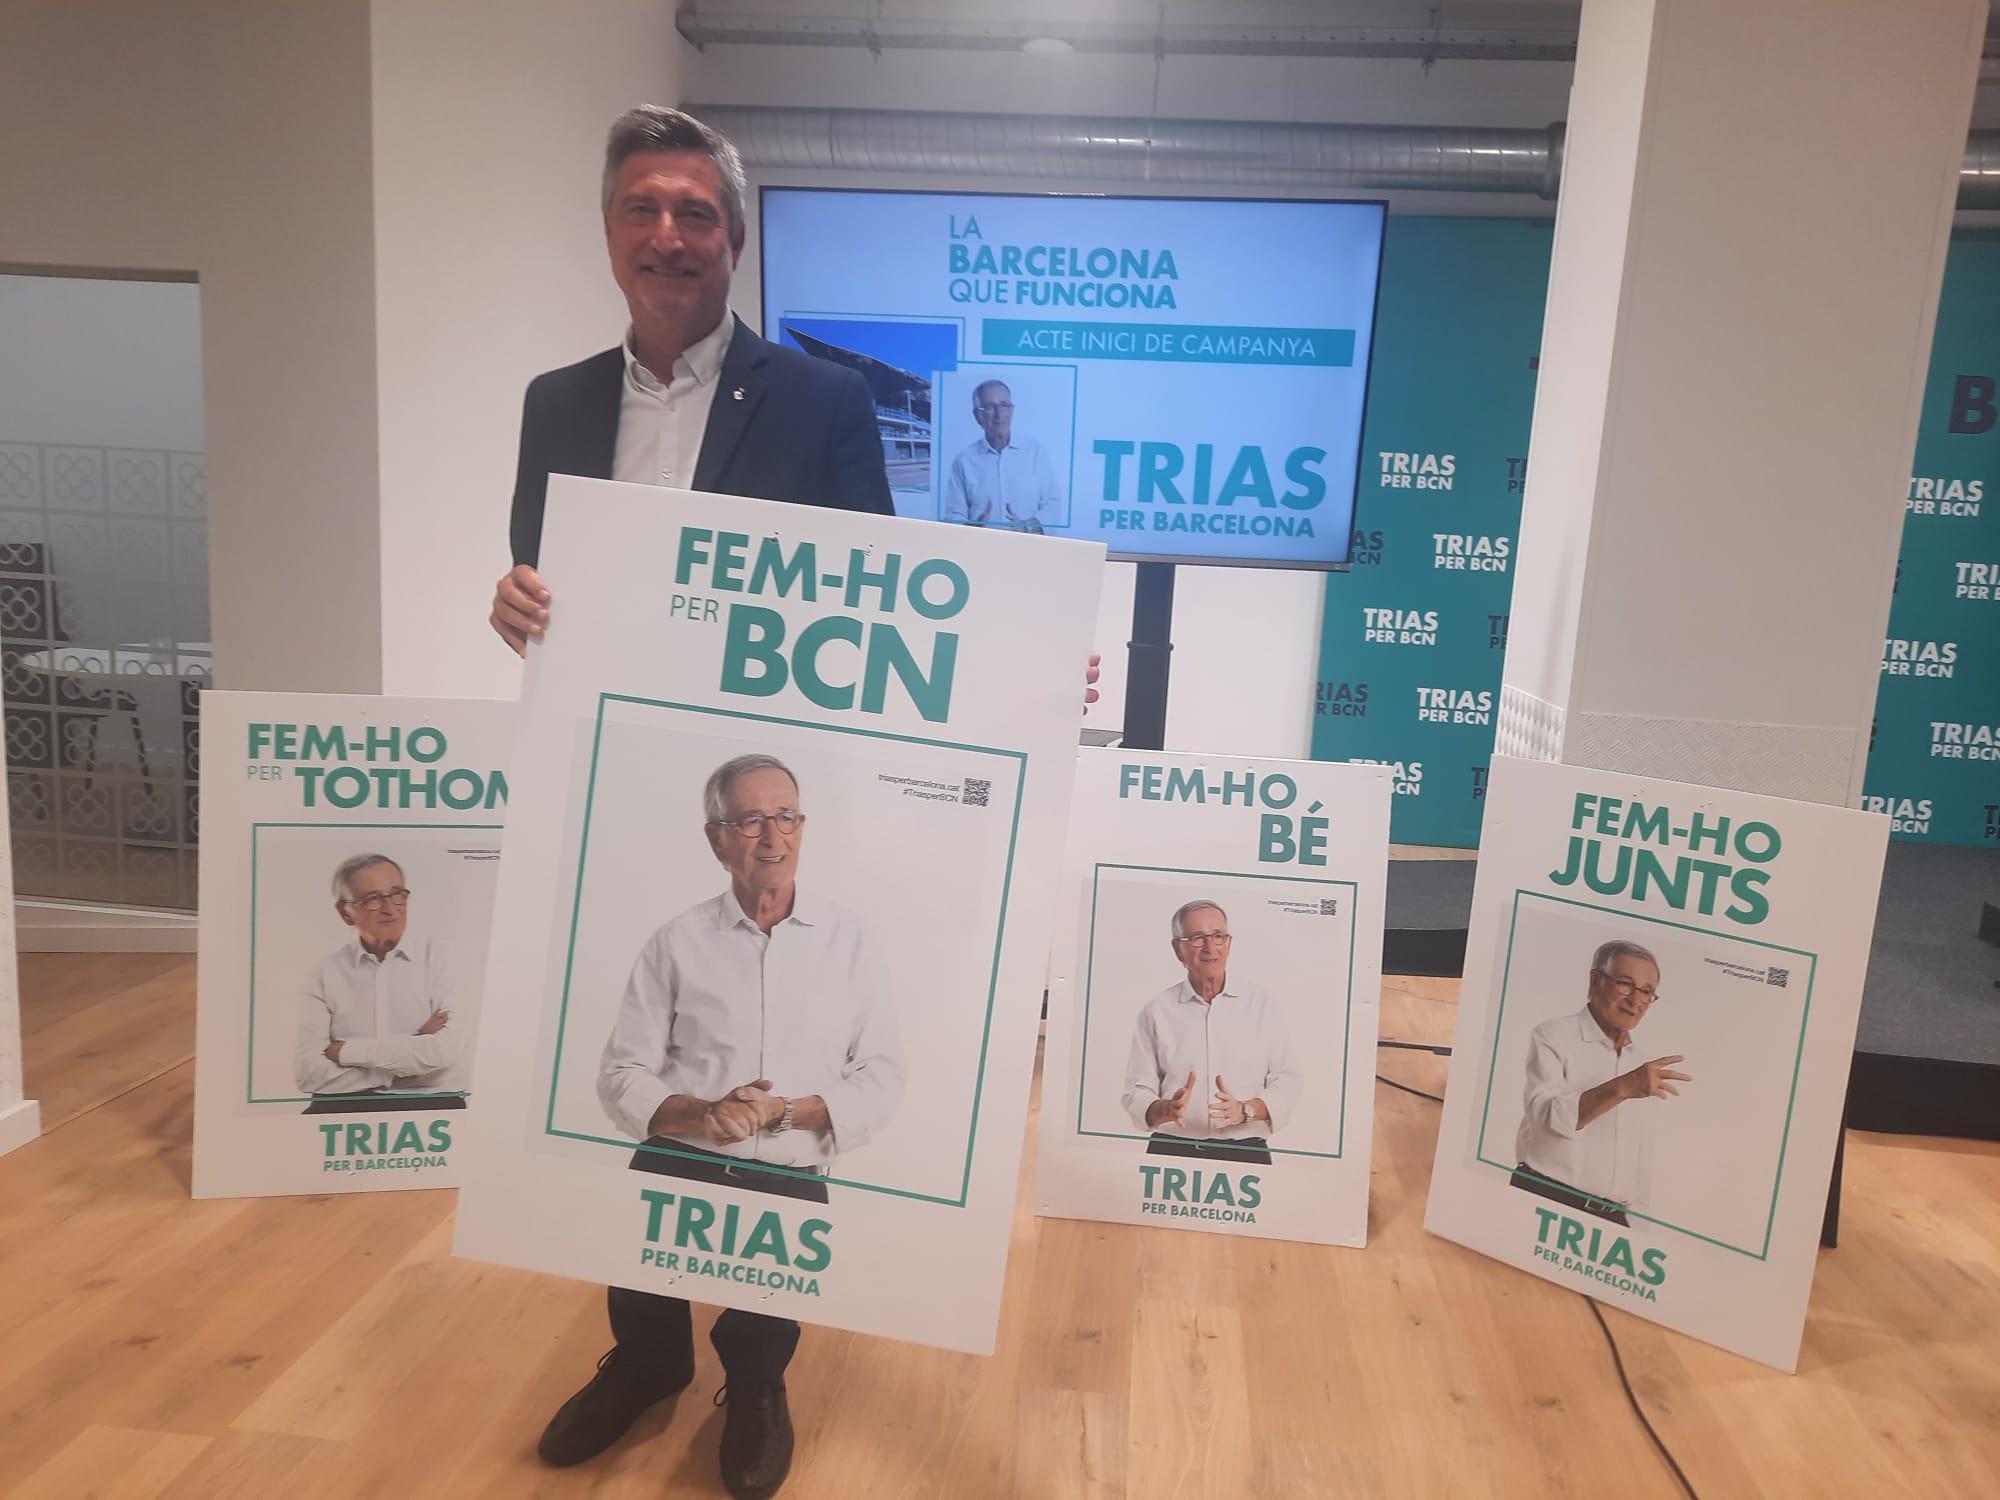 Xavier Trias apela a la "gran familia barcelonesa" con el lema "Fem-ho"